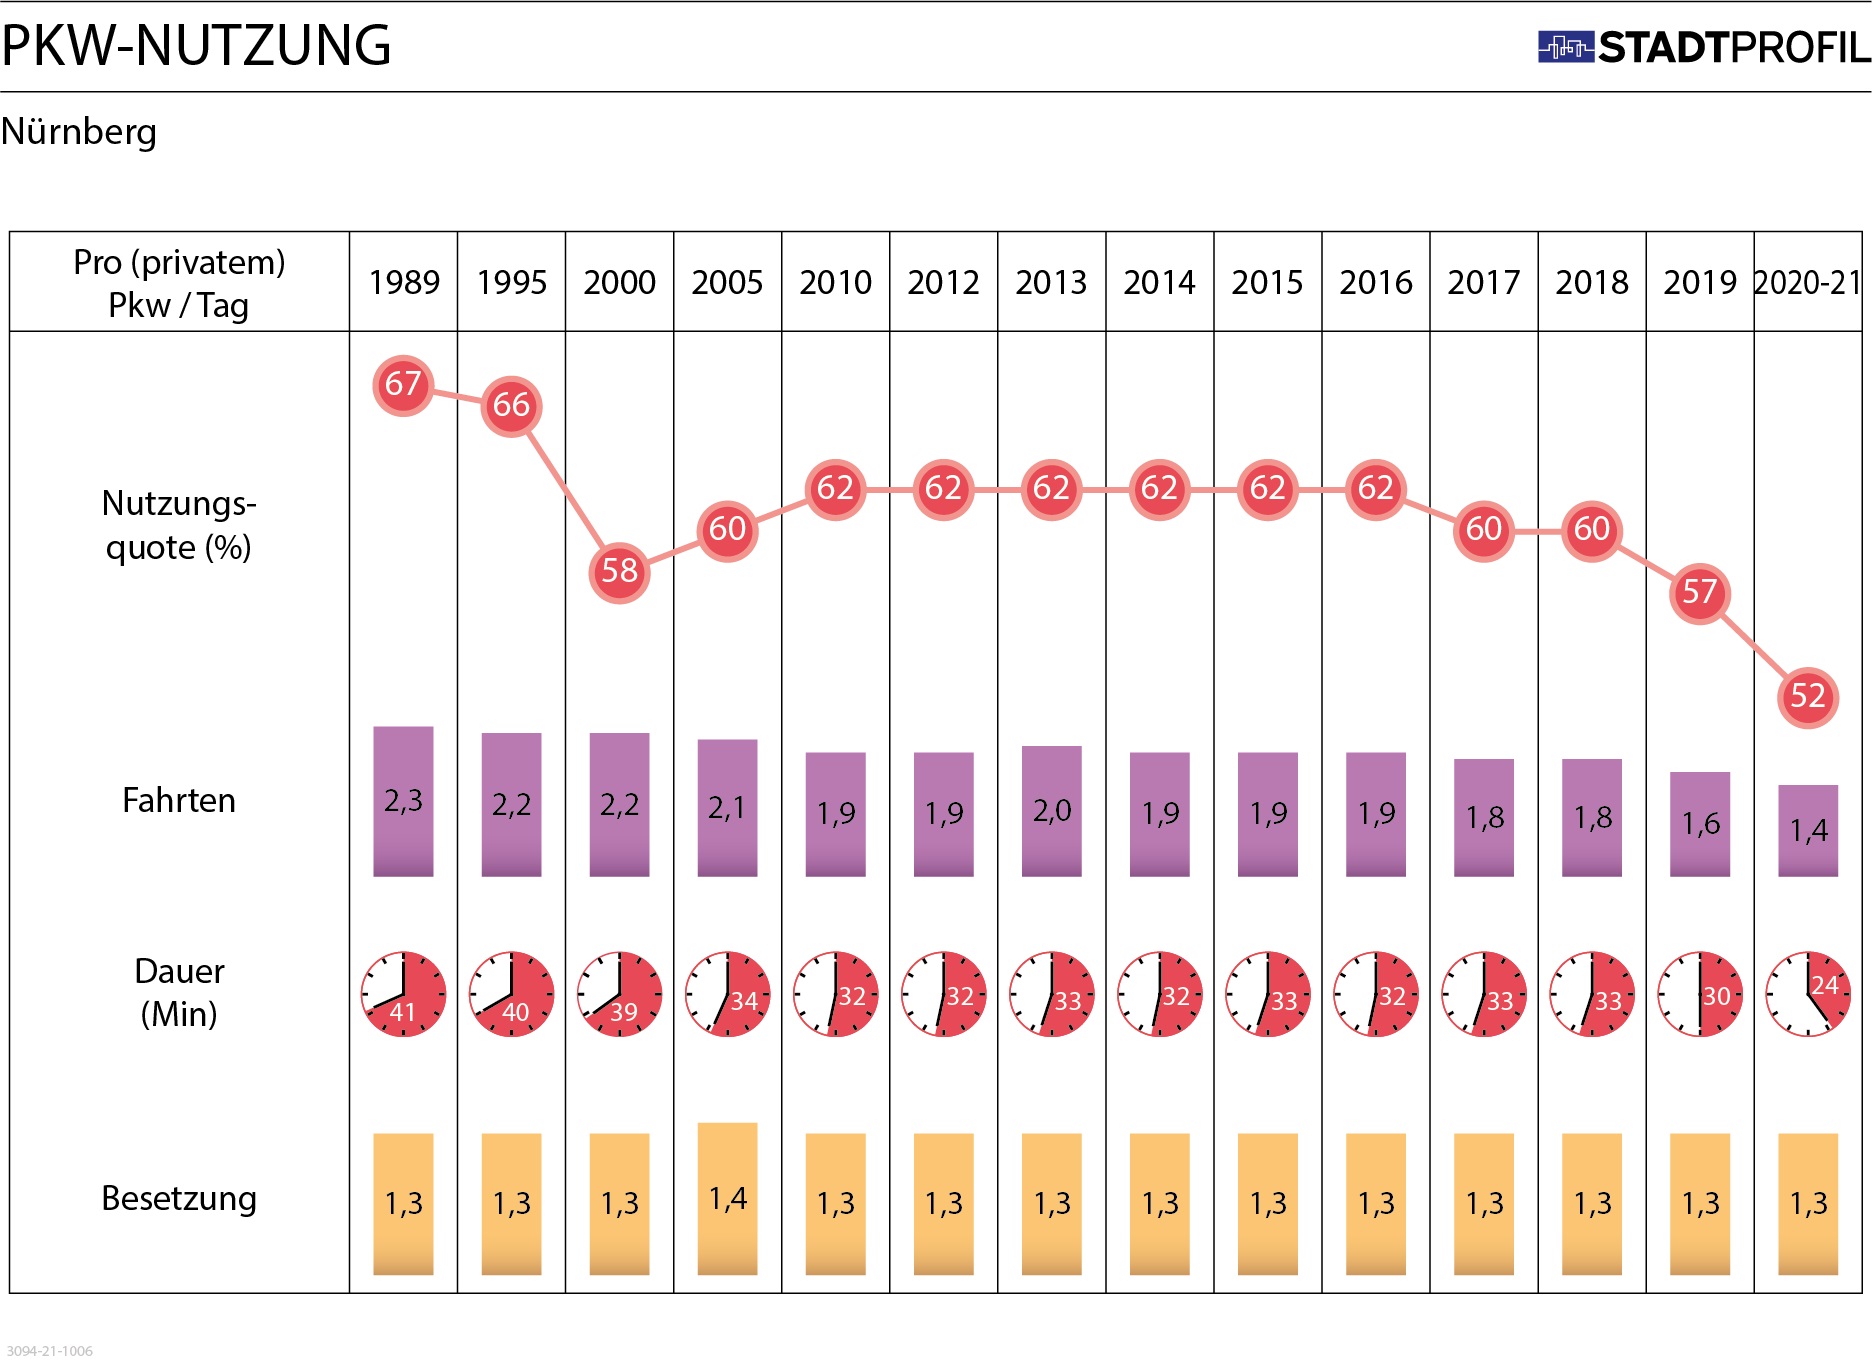 Diagramm zur PKW-Nutzung der Nürnberger im Untersuchungszeit 2020-2021